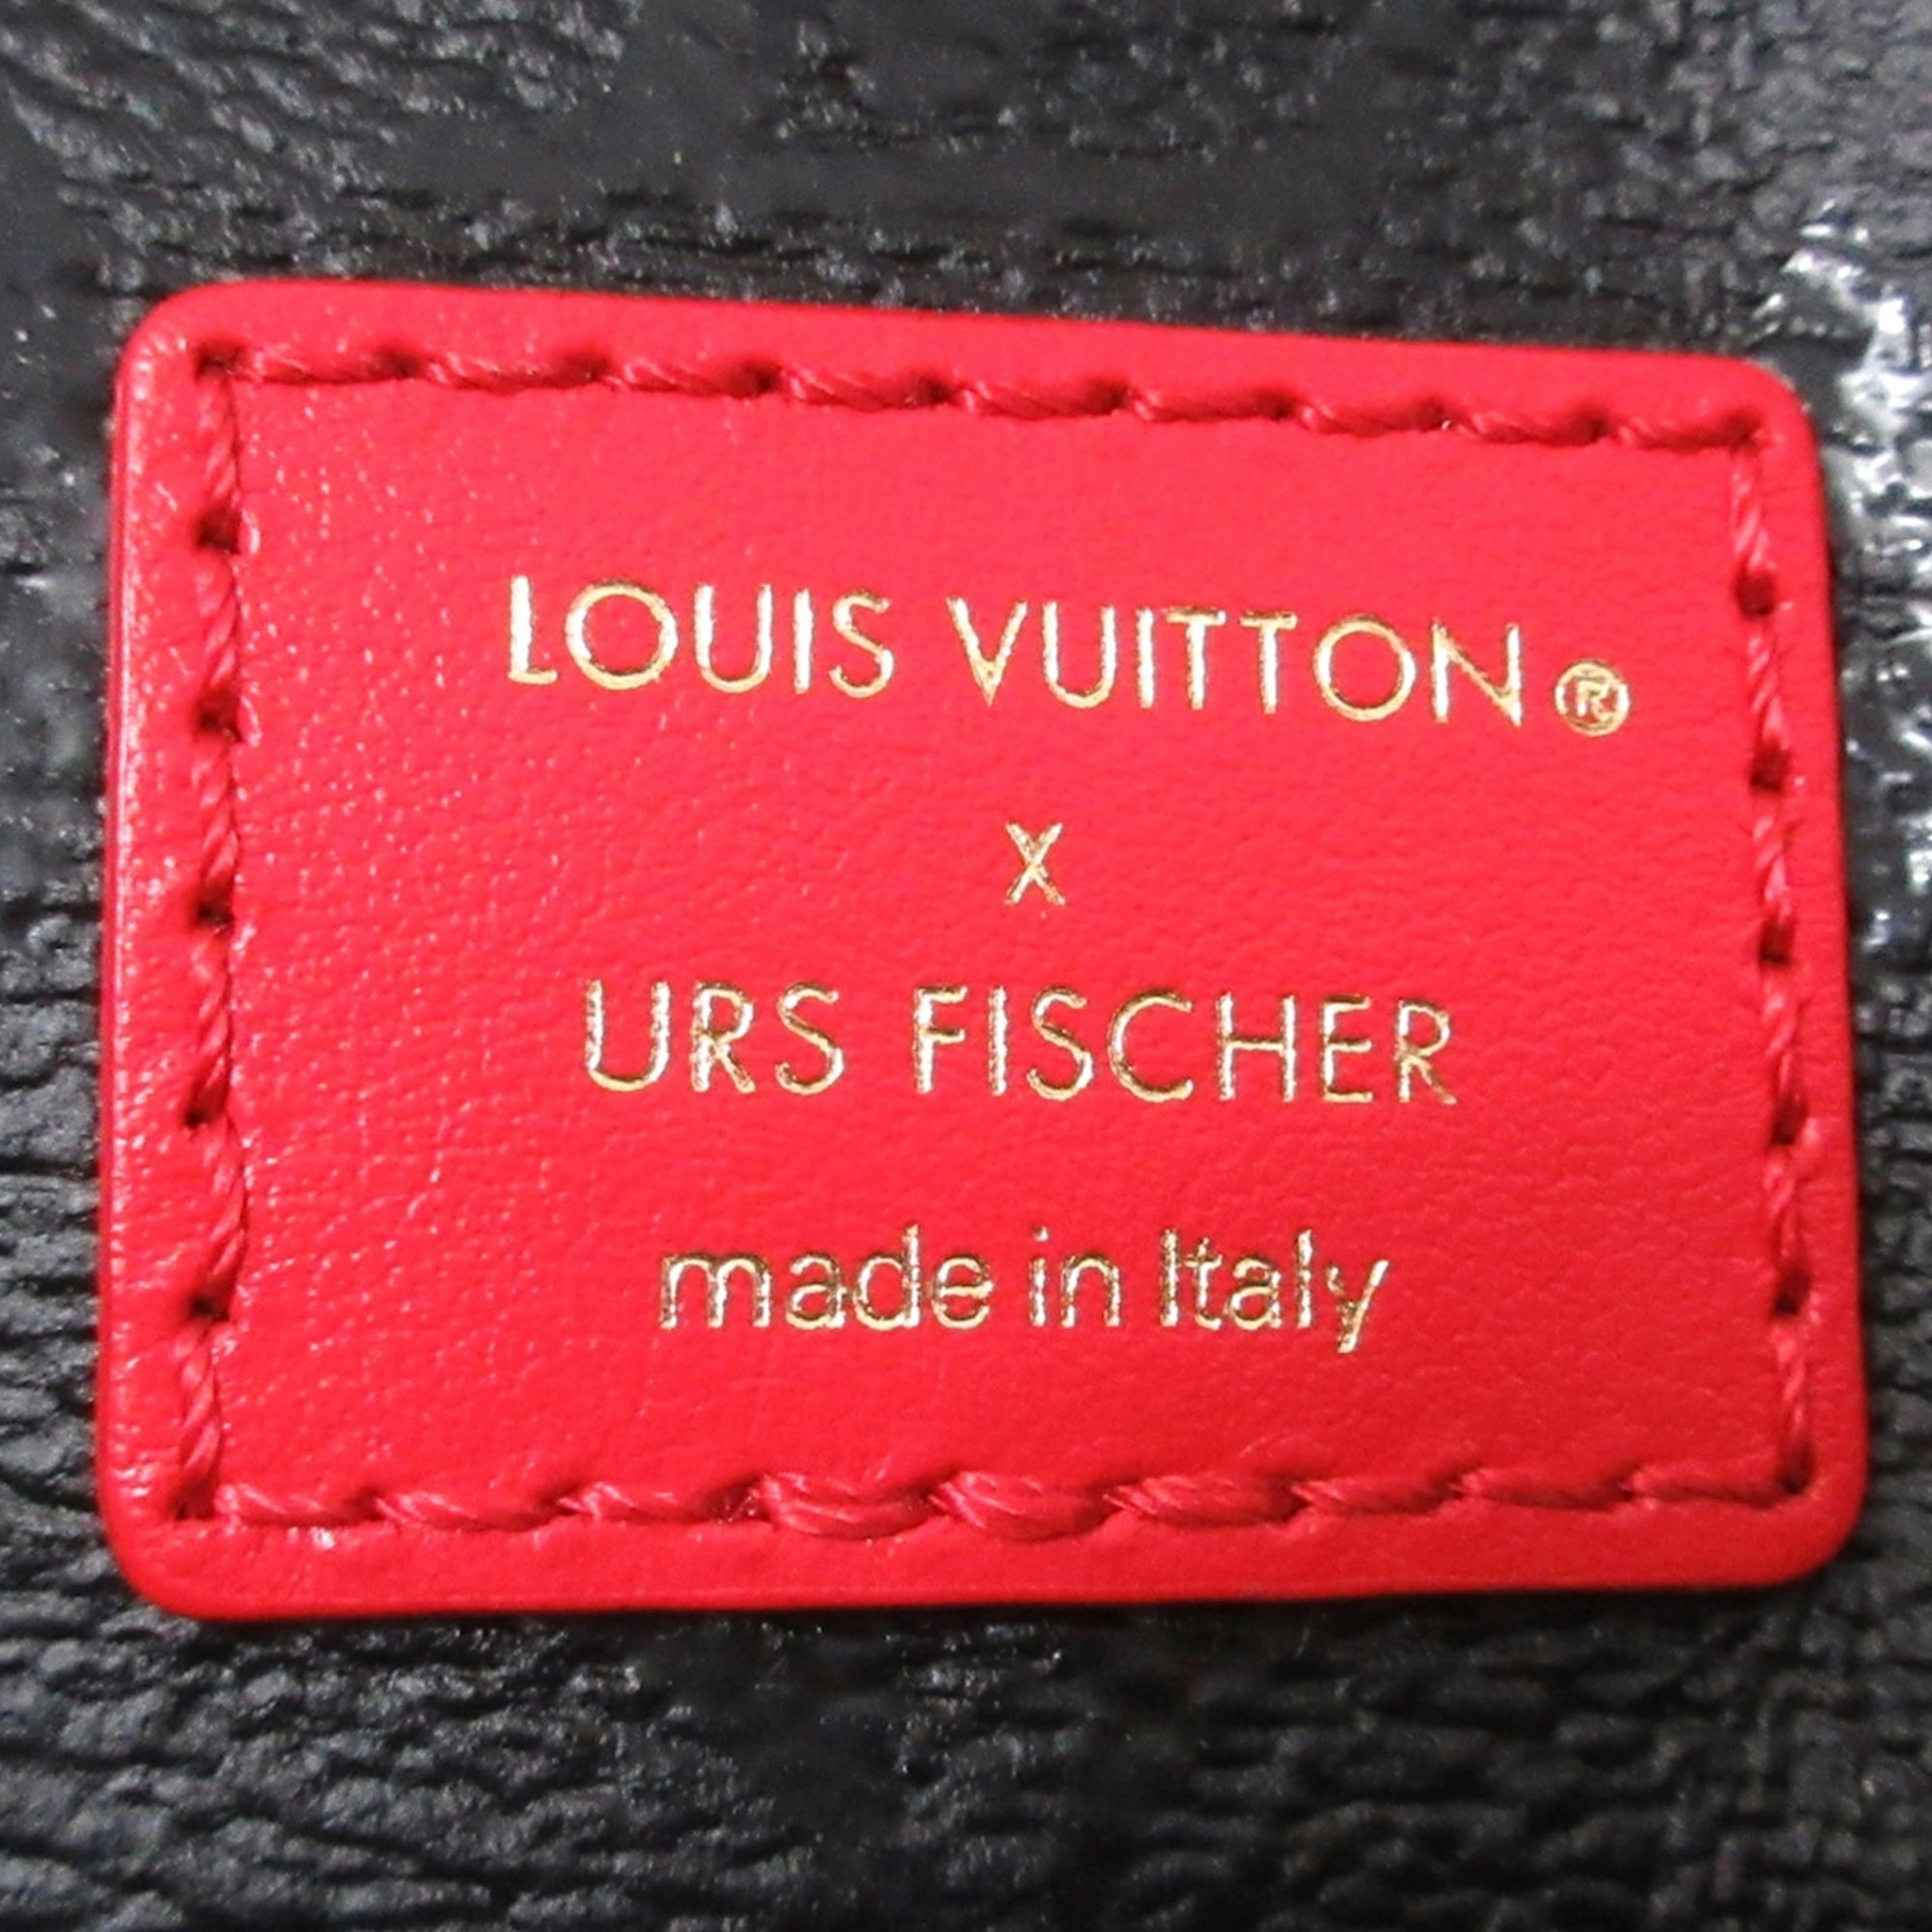 Louis Vuitton OnTheGo GM Black Red Giant Monogram Urs Fischer